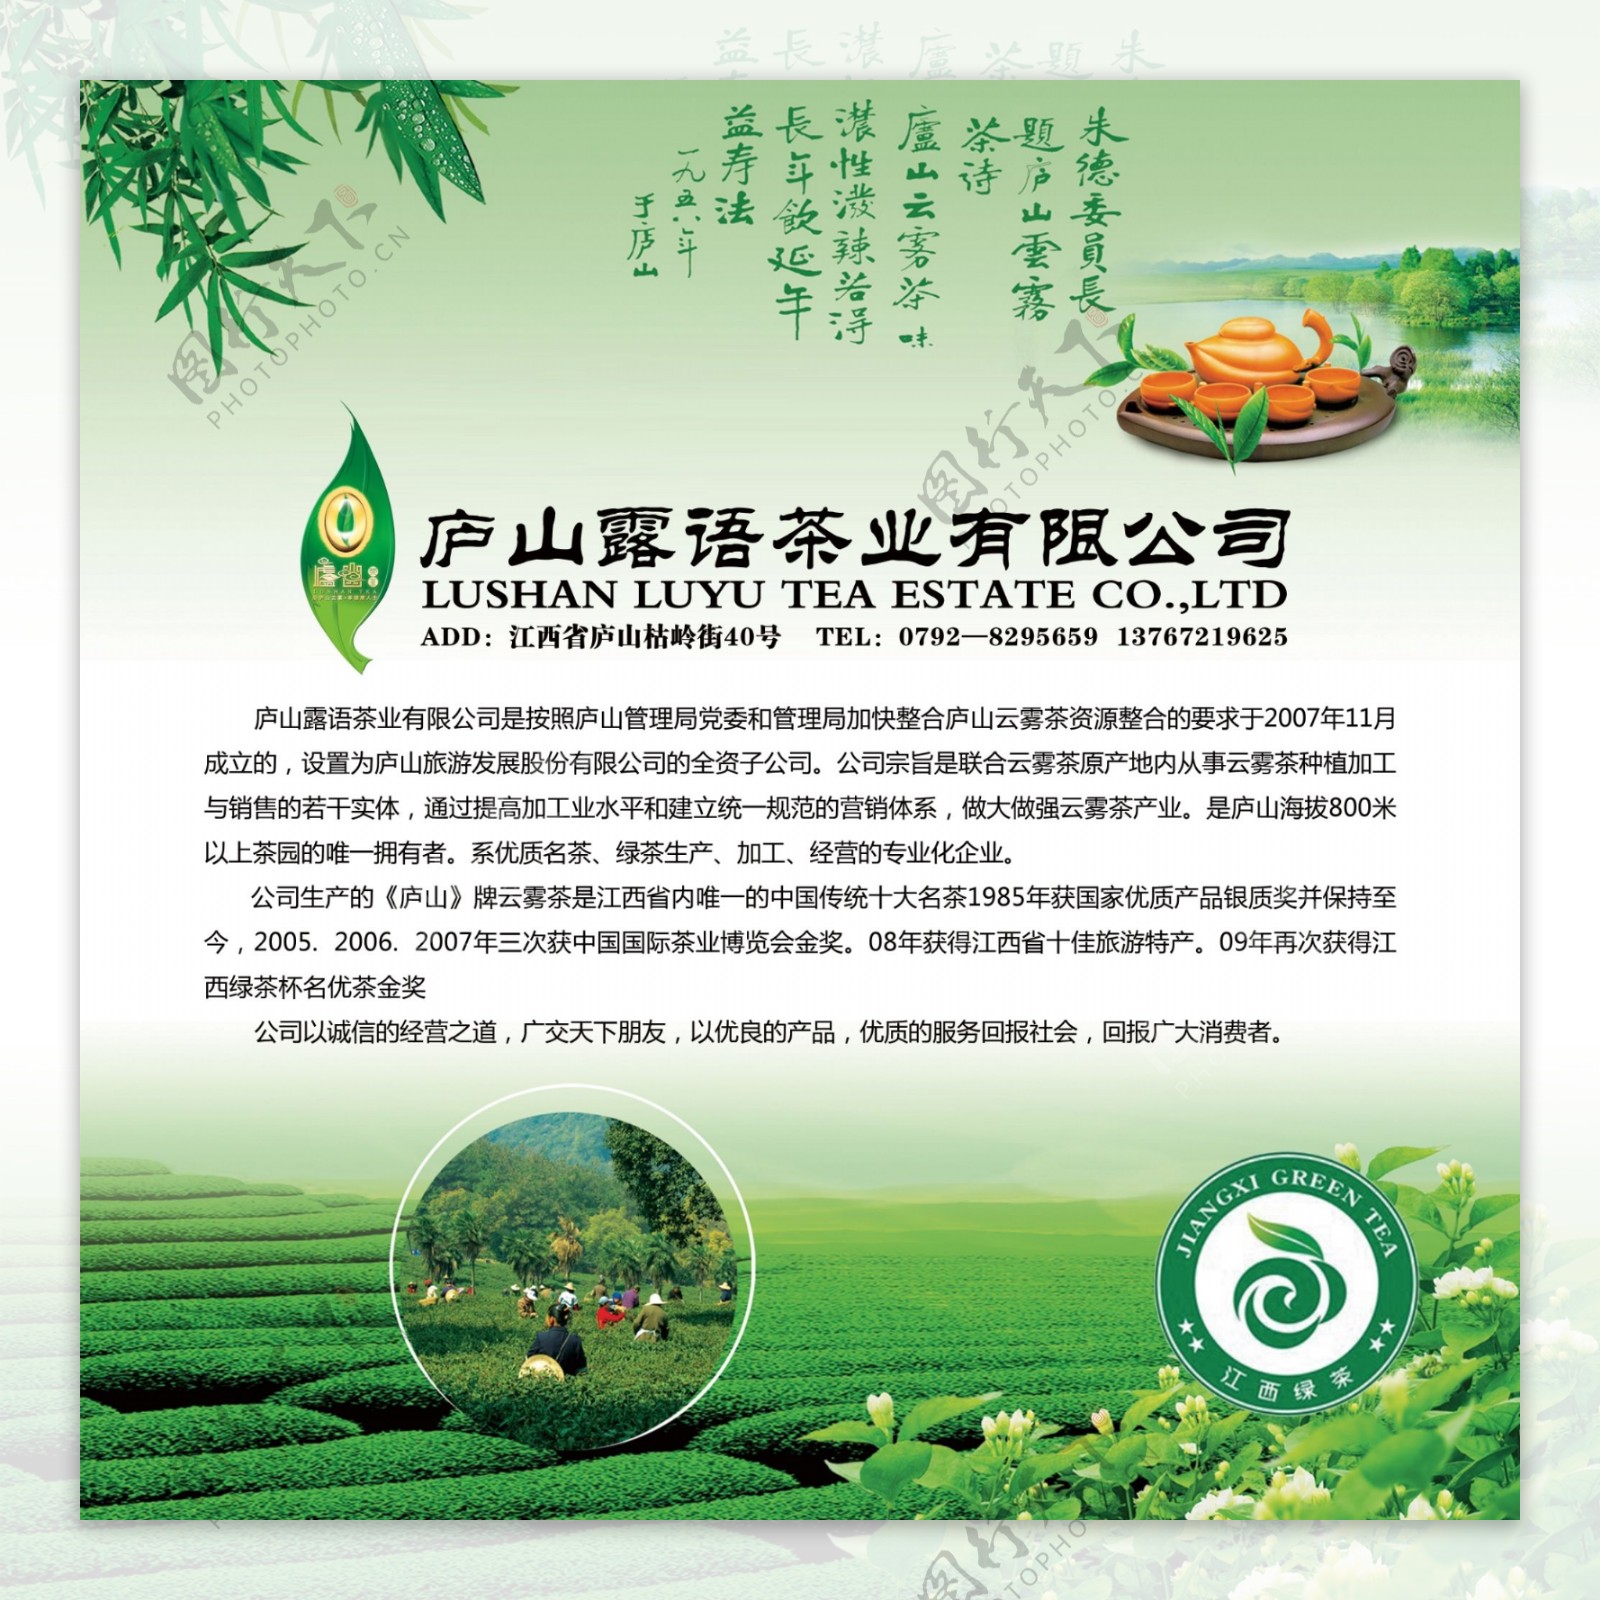 茶业公司海报图片